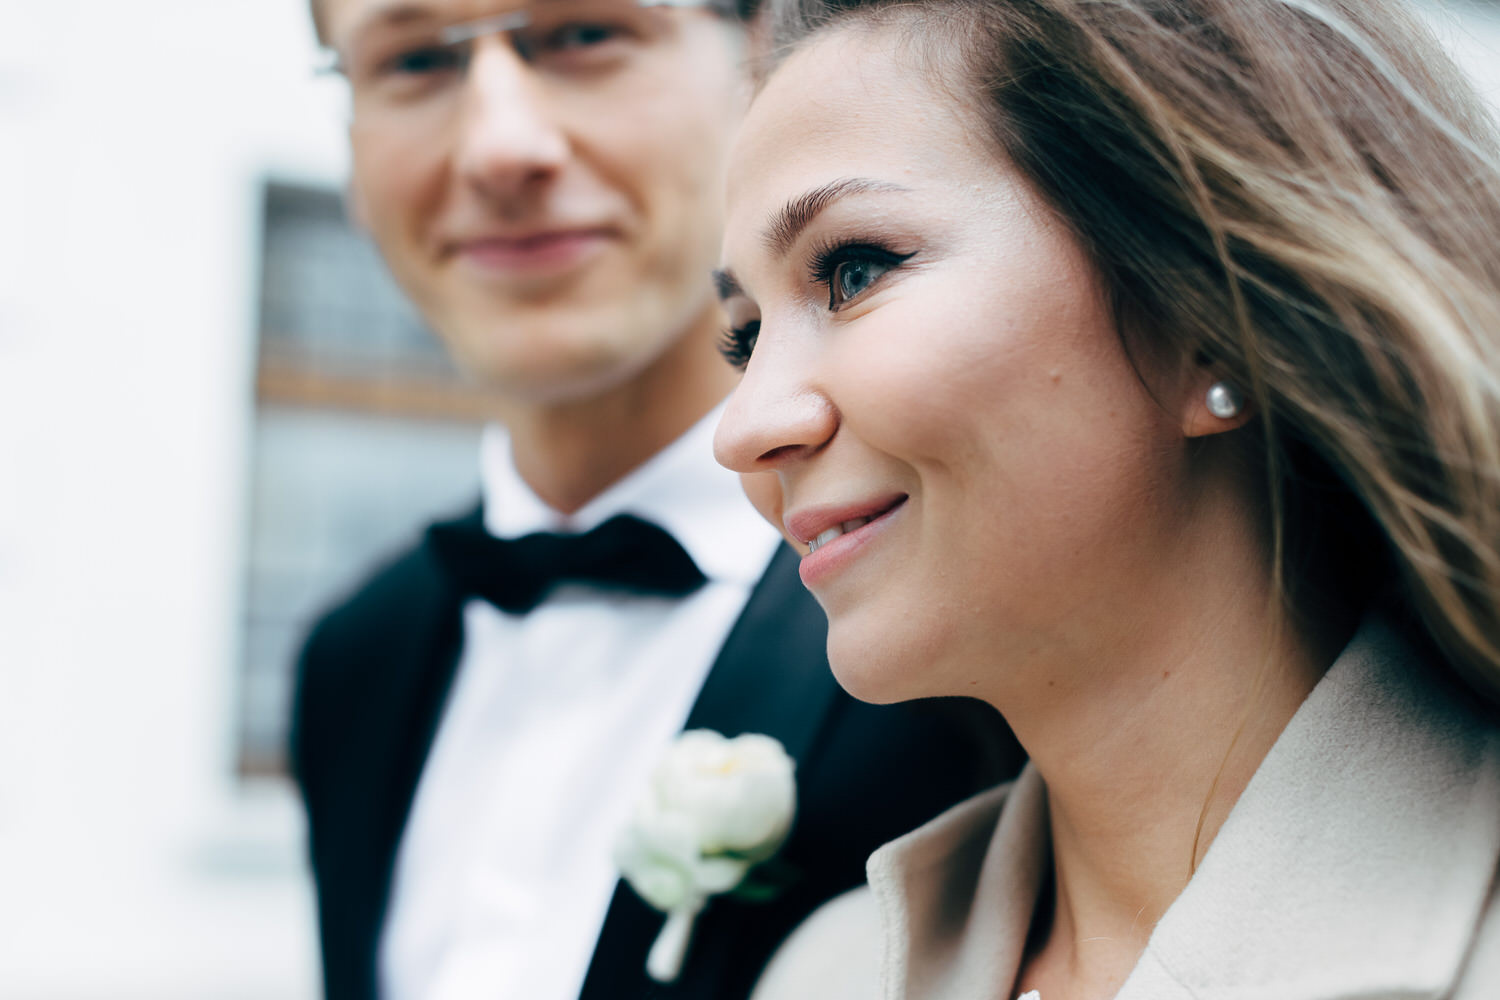 уютная свадьба на 20 человек в москве